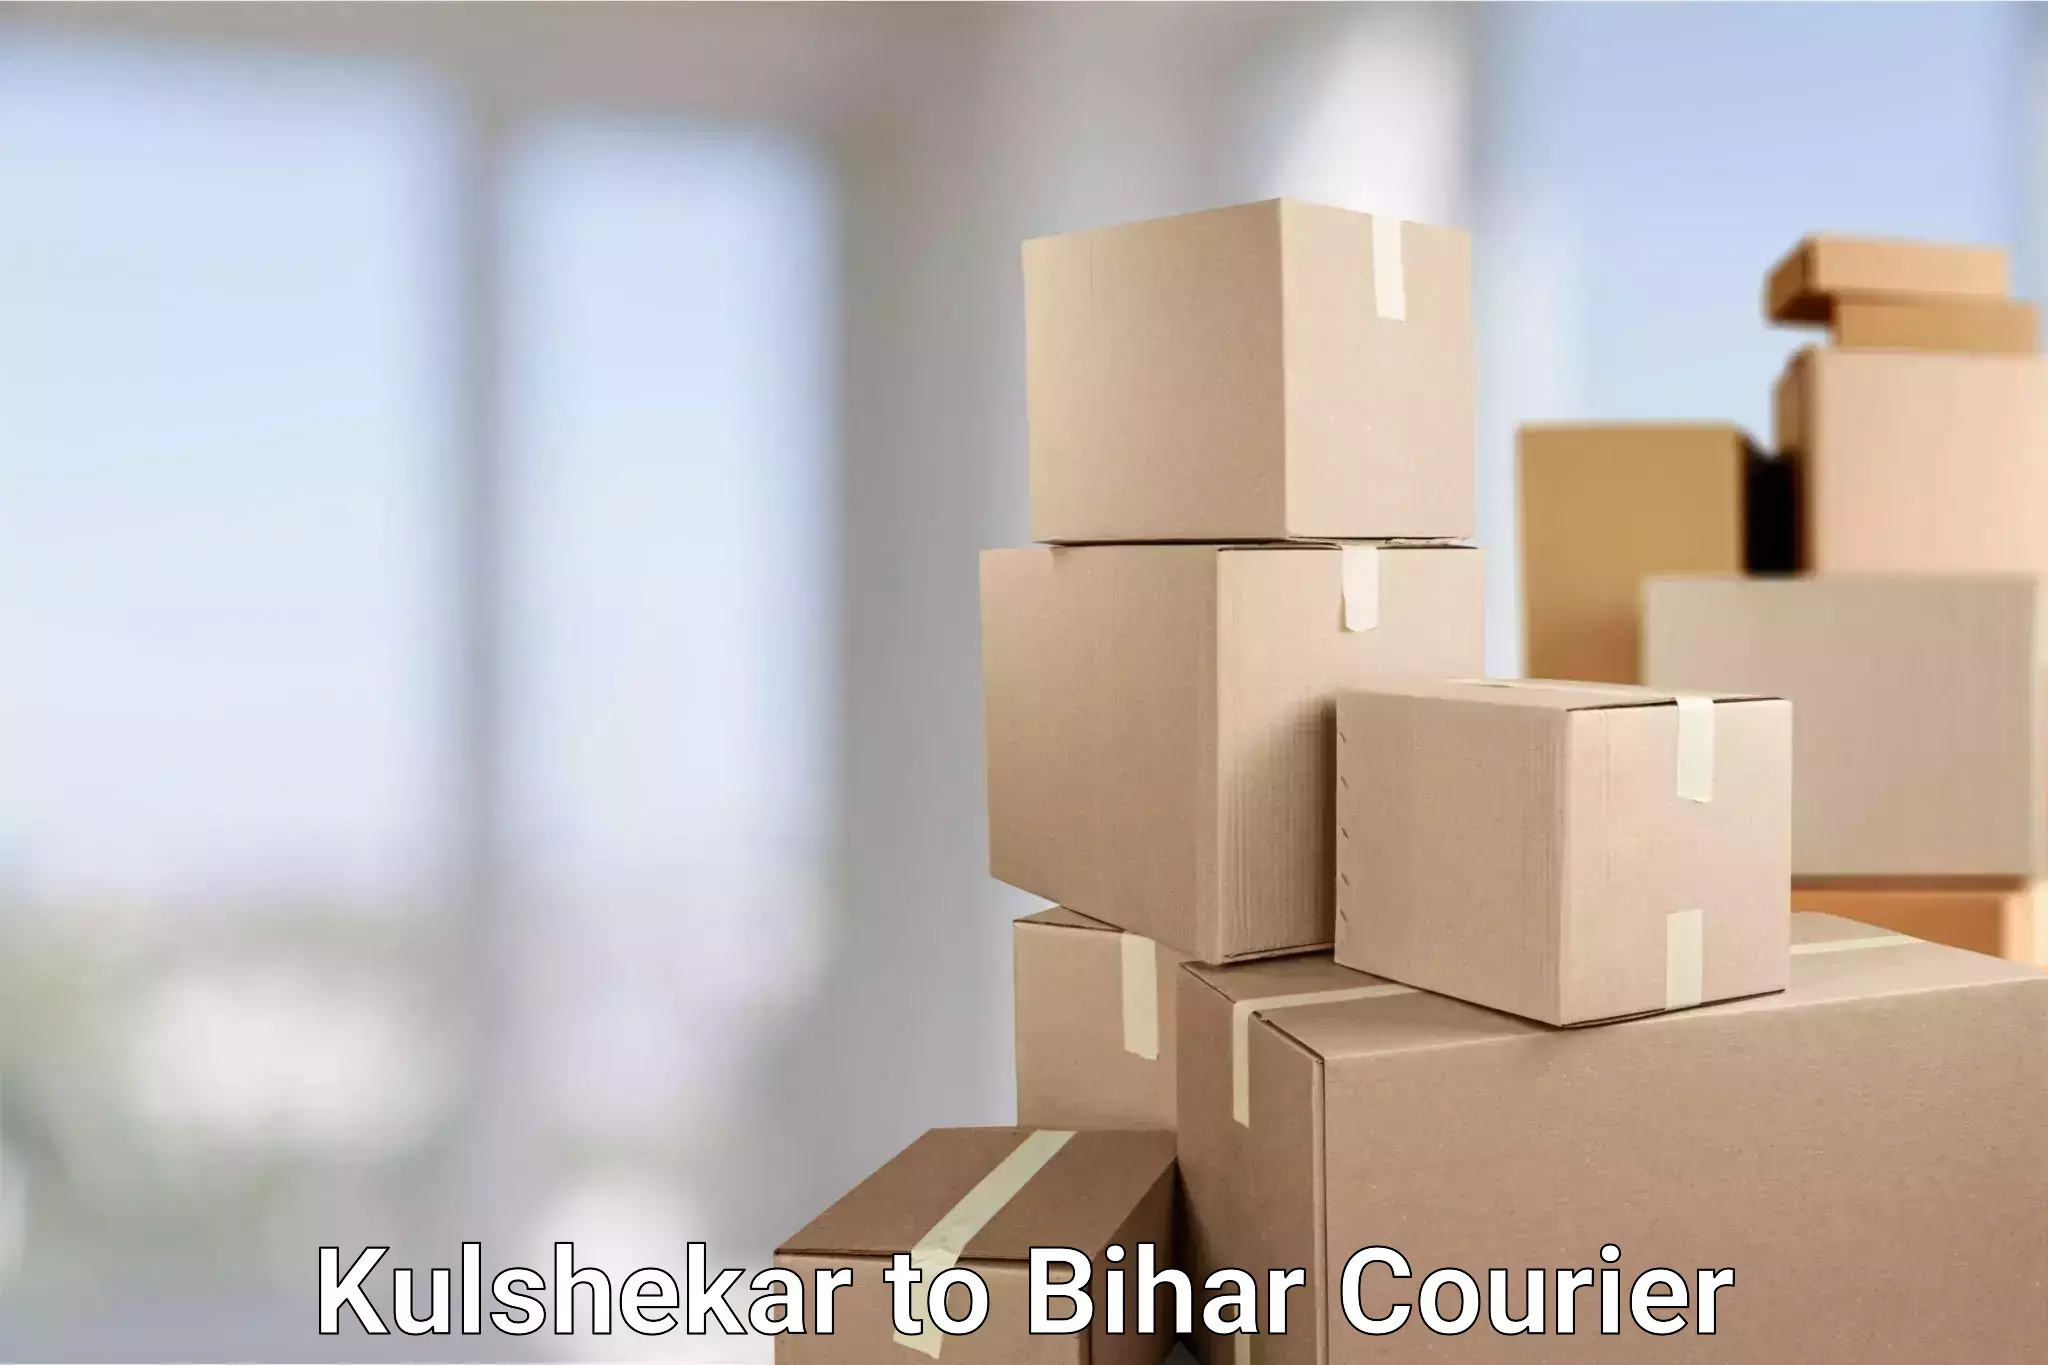 Customized delivery options Kulshekar to Jevargi